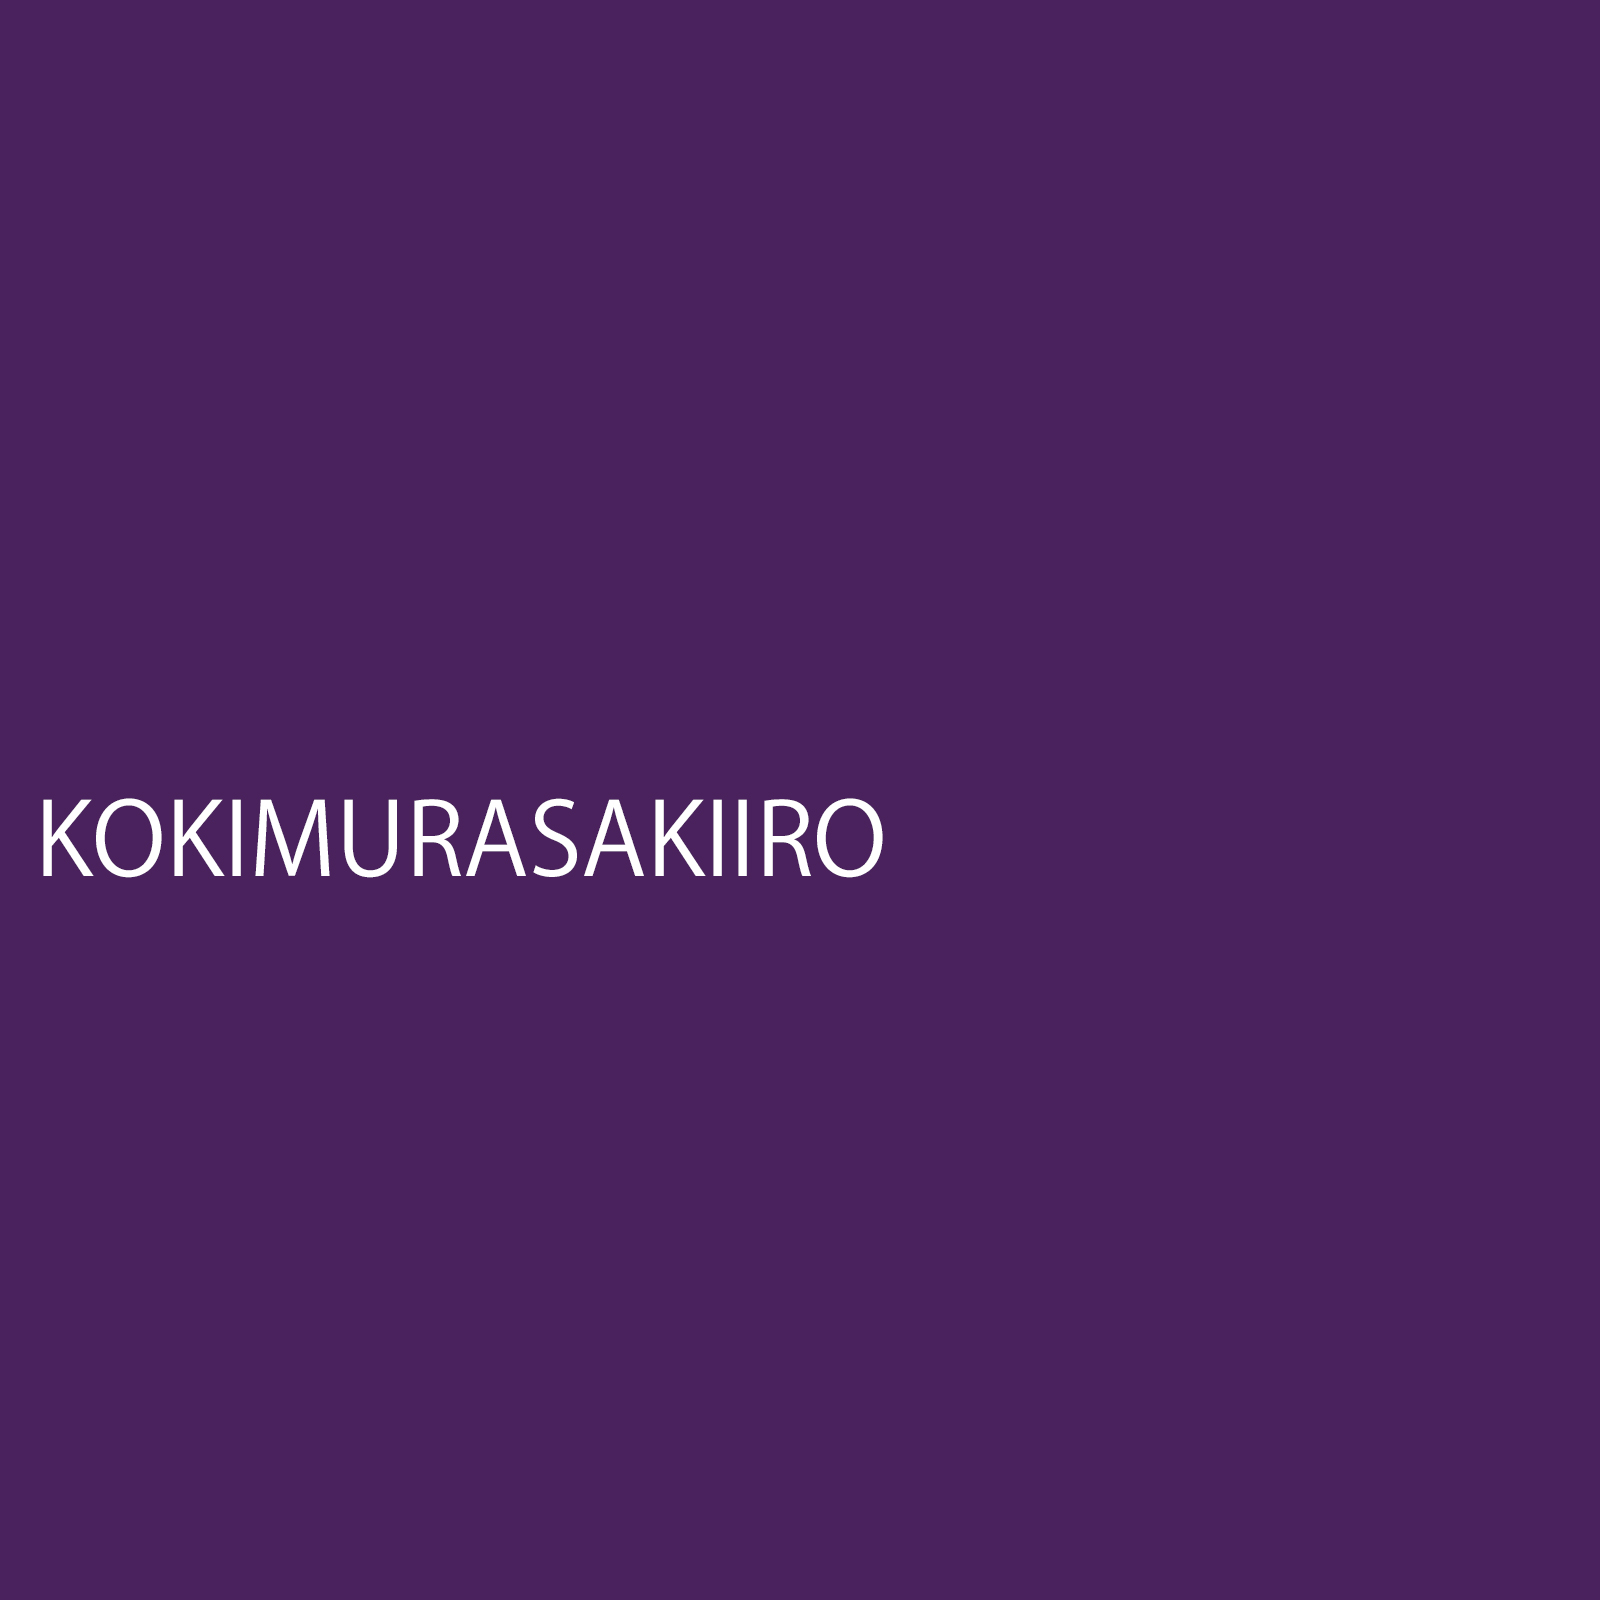 kokimurasaki